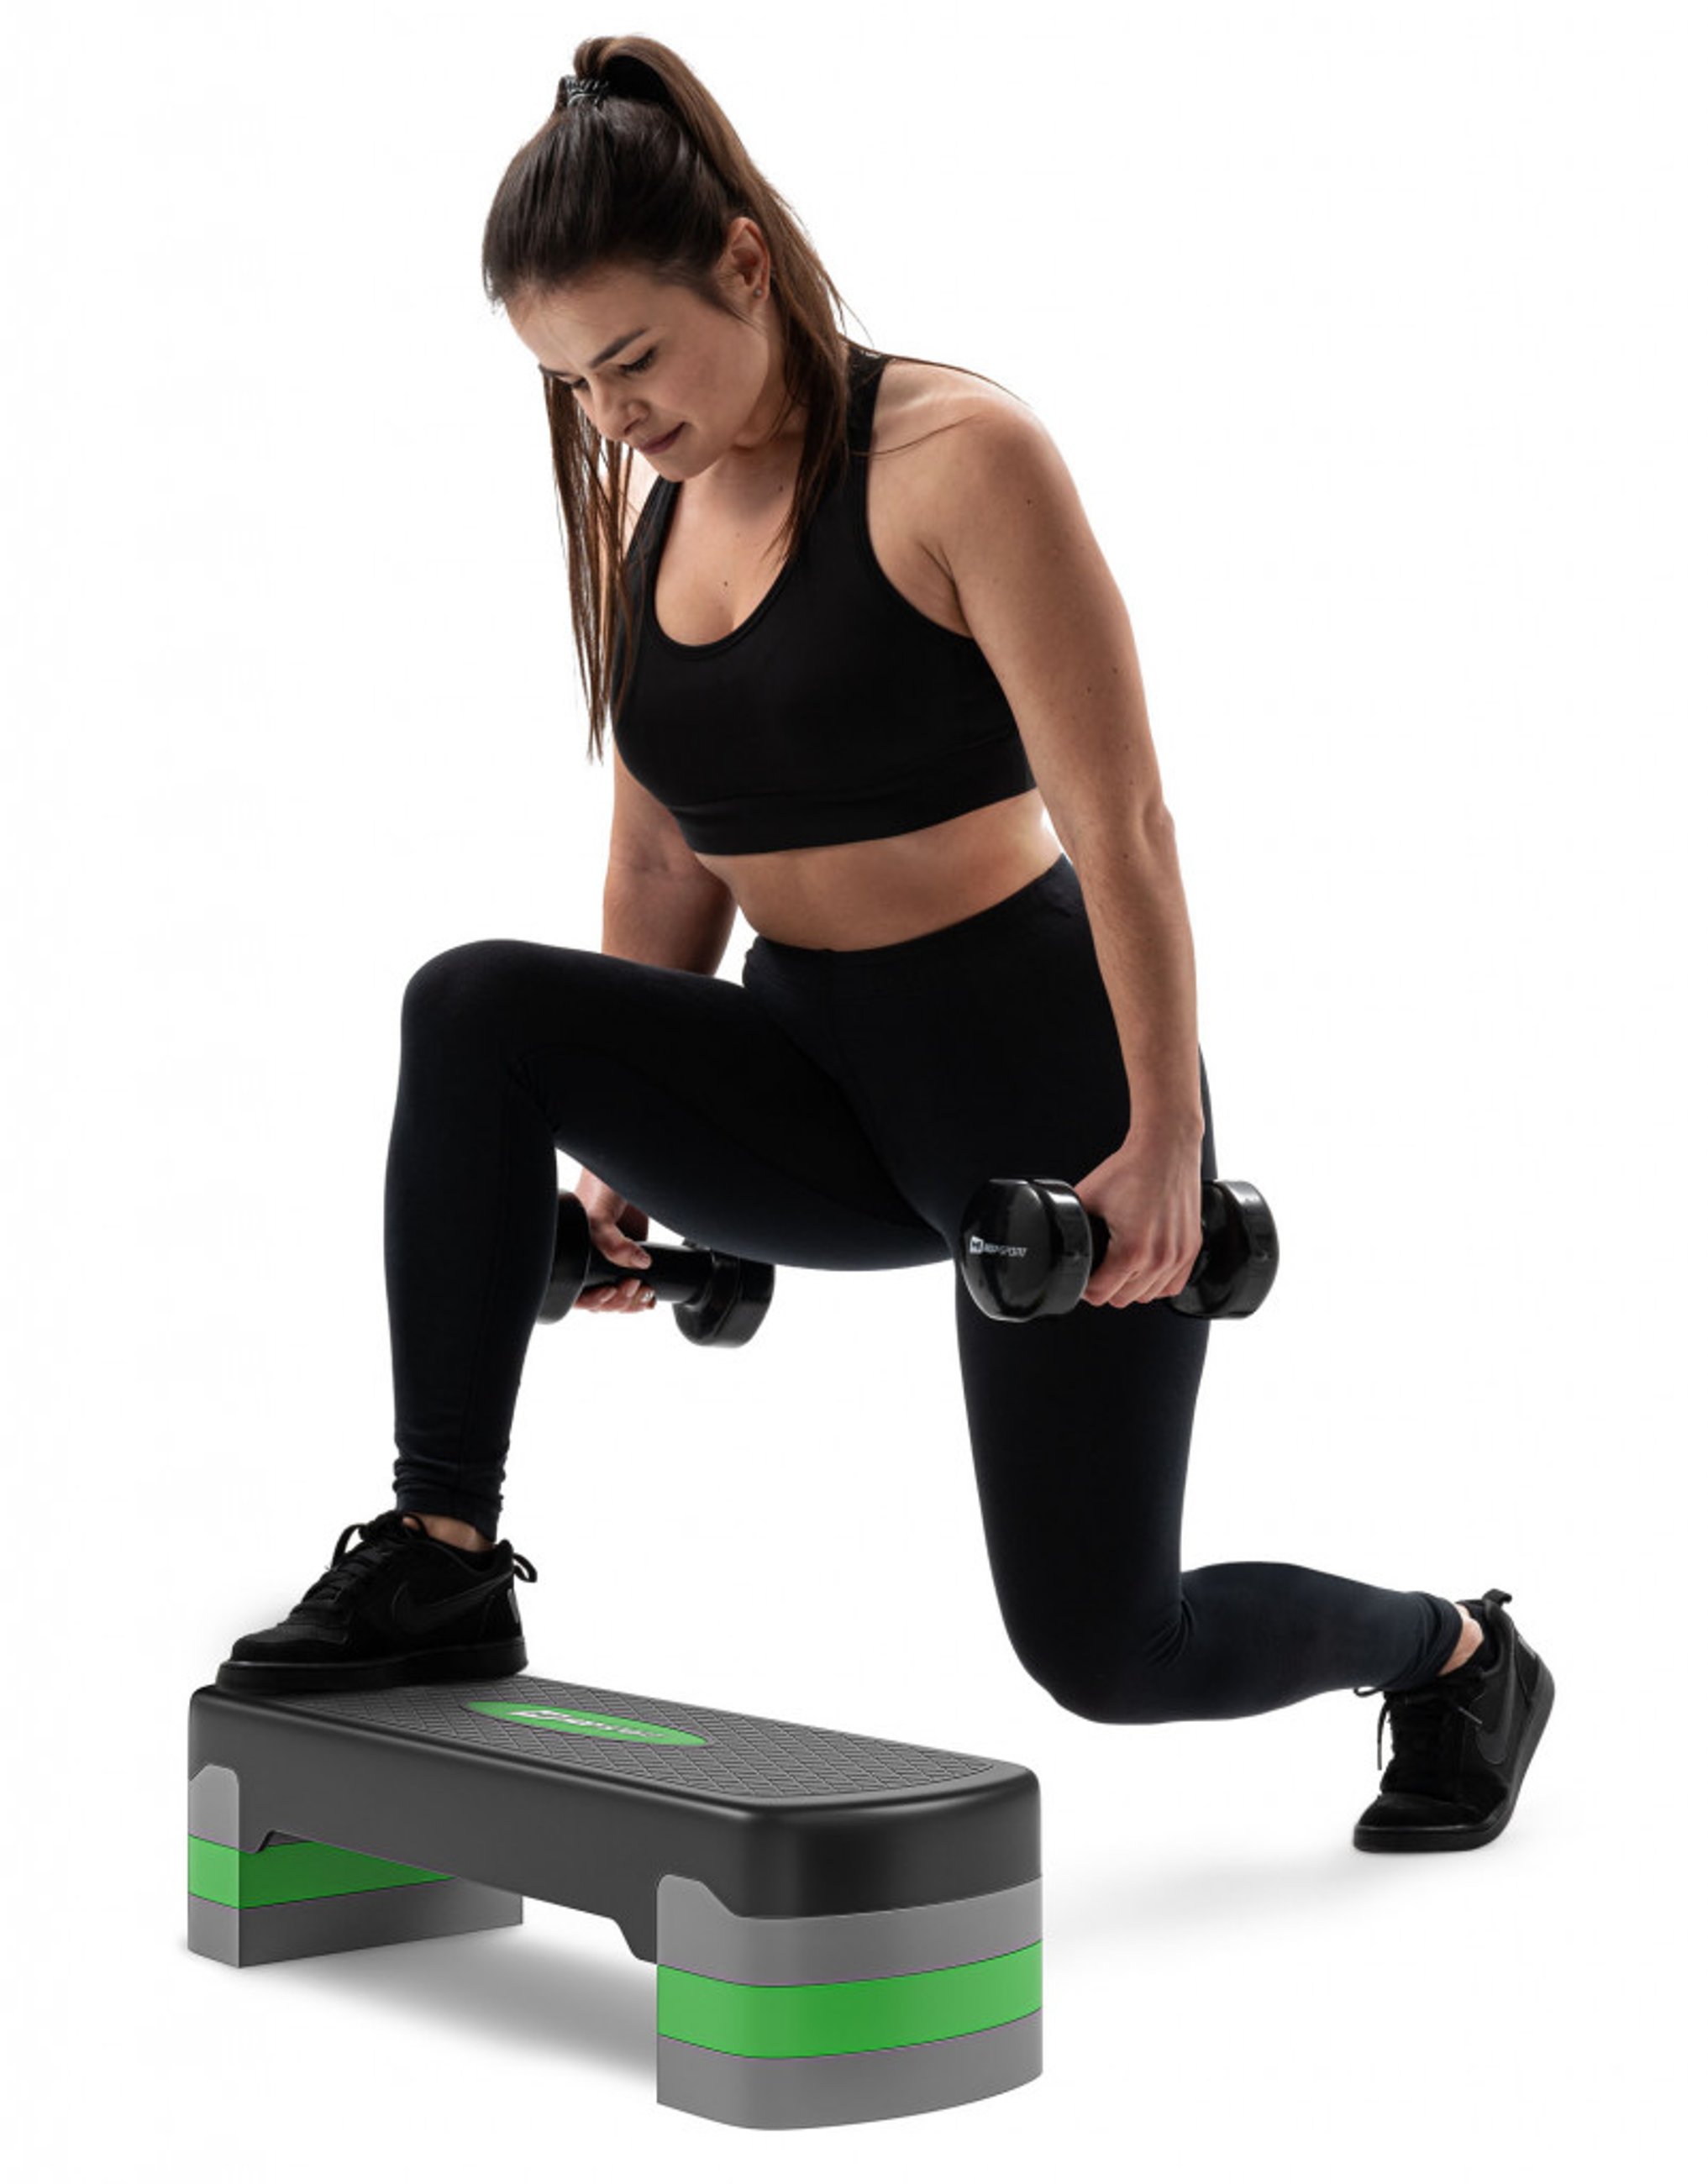 modelka ćwicząca na stepie do aerobiku marki Hop-Sport z dodatkowym obciążeniem